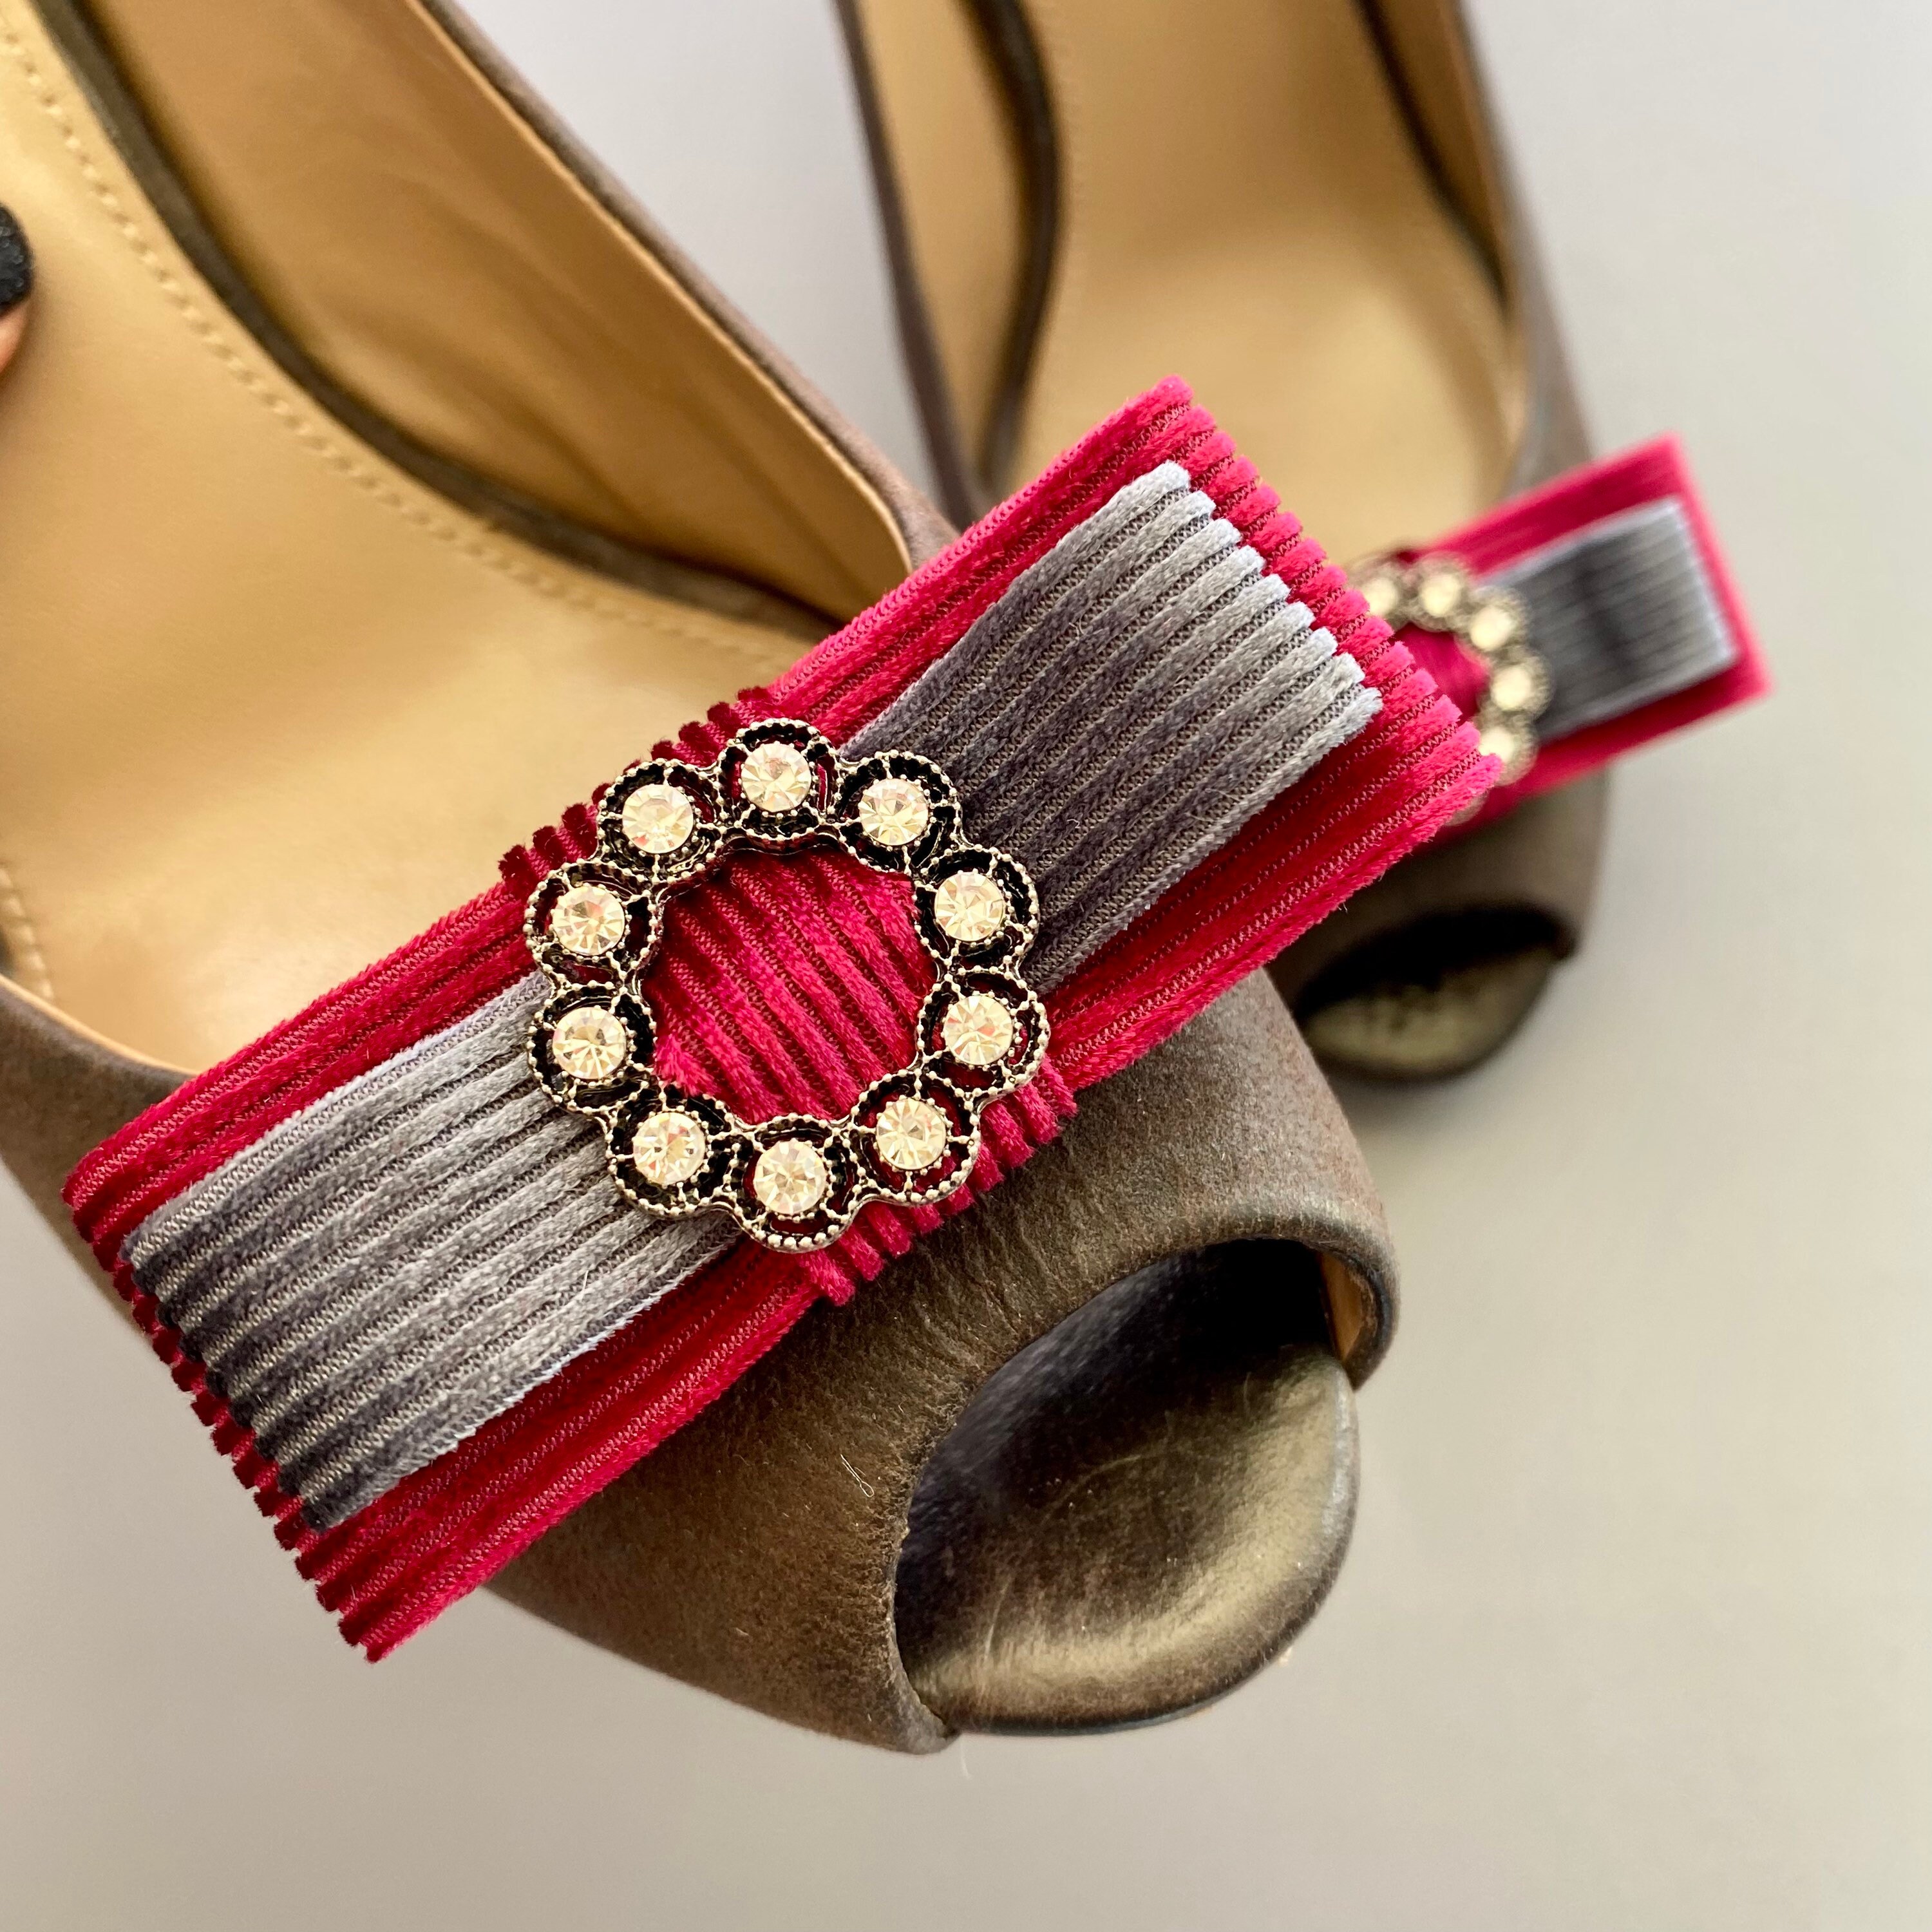 2 Pcs Detachable Shoe Clips PU Leather Slim Bow Shoe Decoration Exquisite Shoes  Accessories Shoe Embellishment for Wedding Party